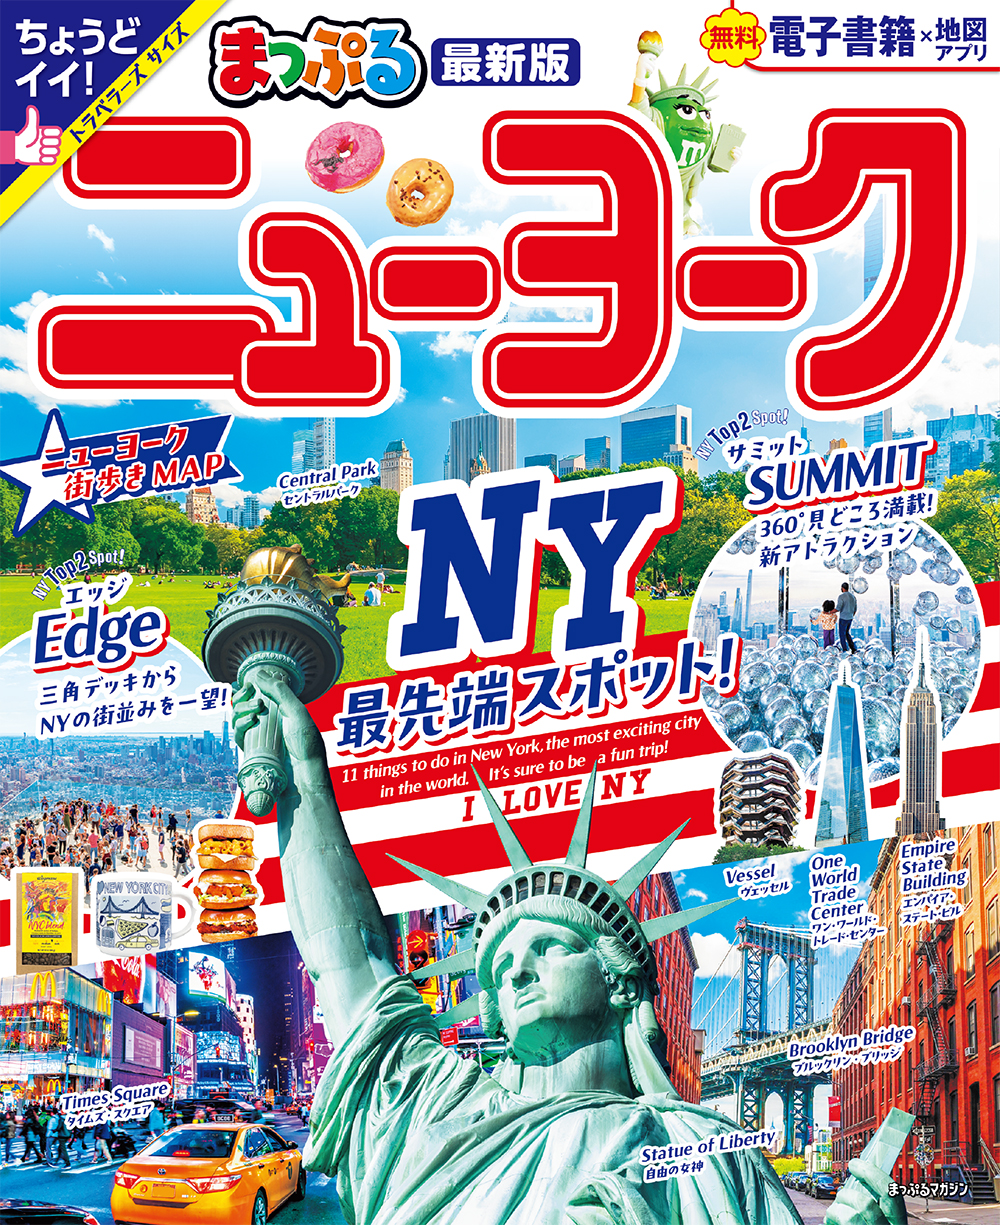 送料込 New York City Official Visitor Guide spring 2015 地球の歩き方 ニューヨーク 2014～15 まっぷる 別冊 付録付 3冊セット(Y16